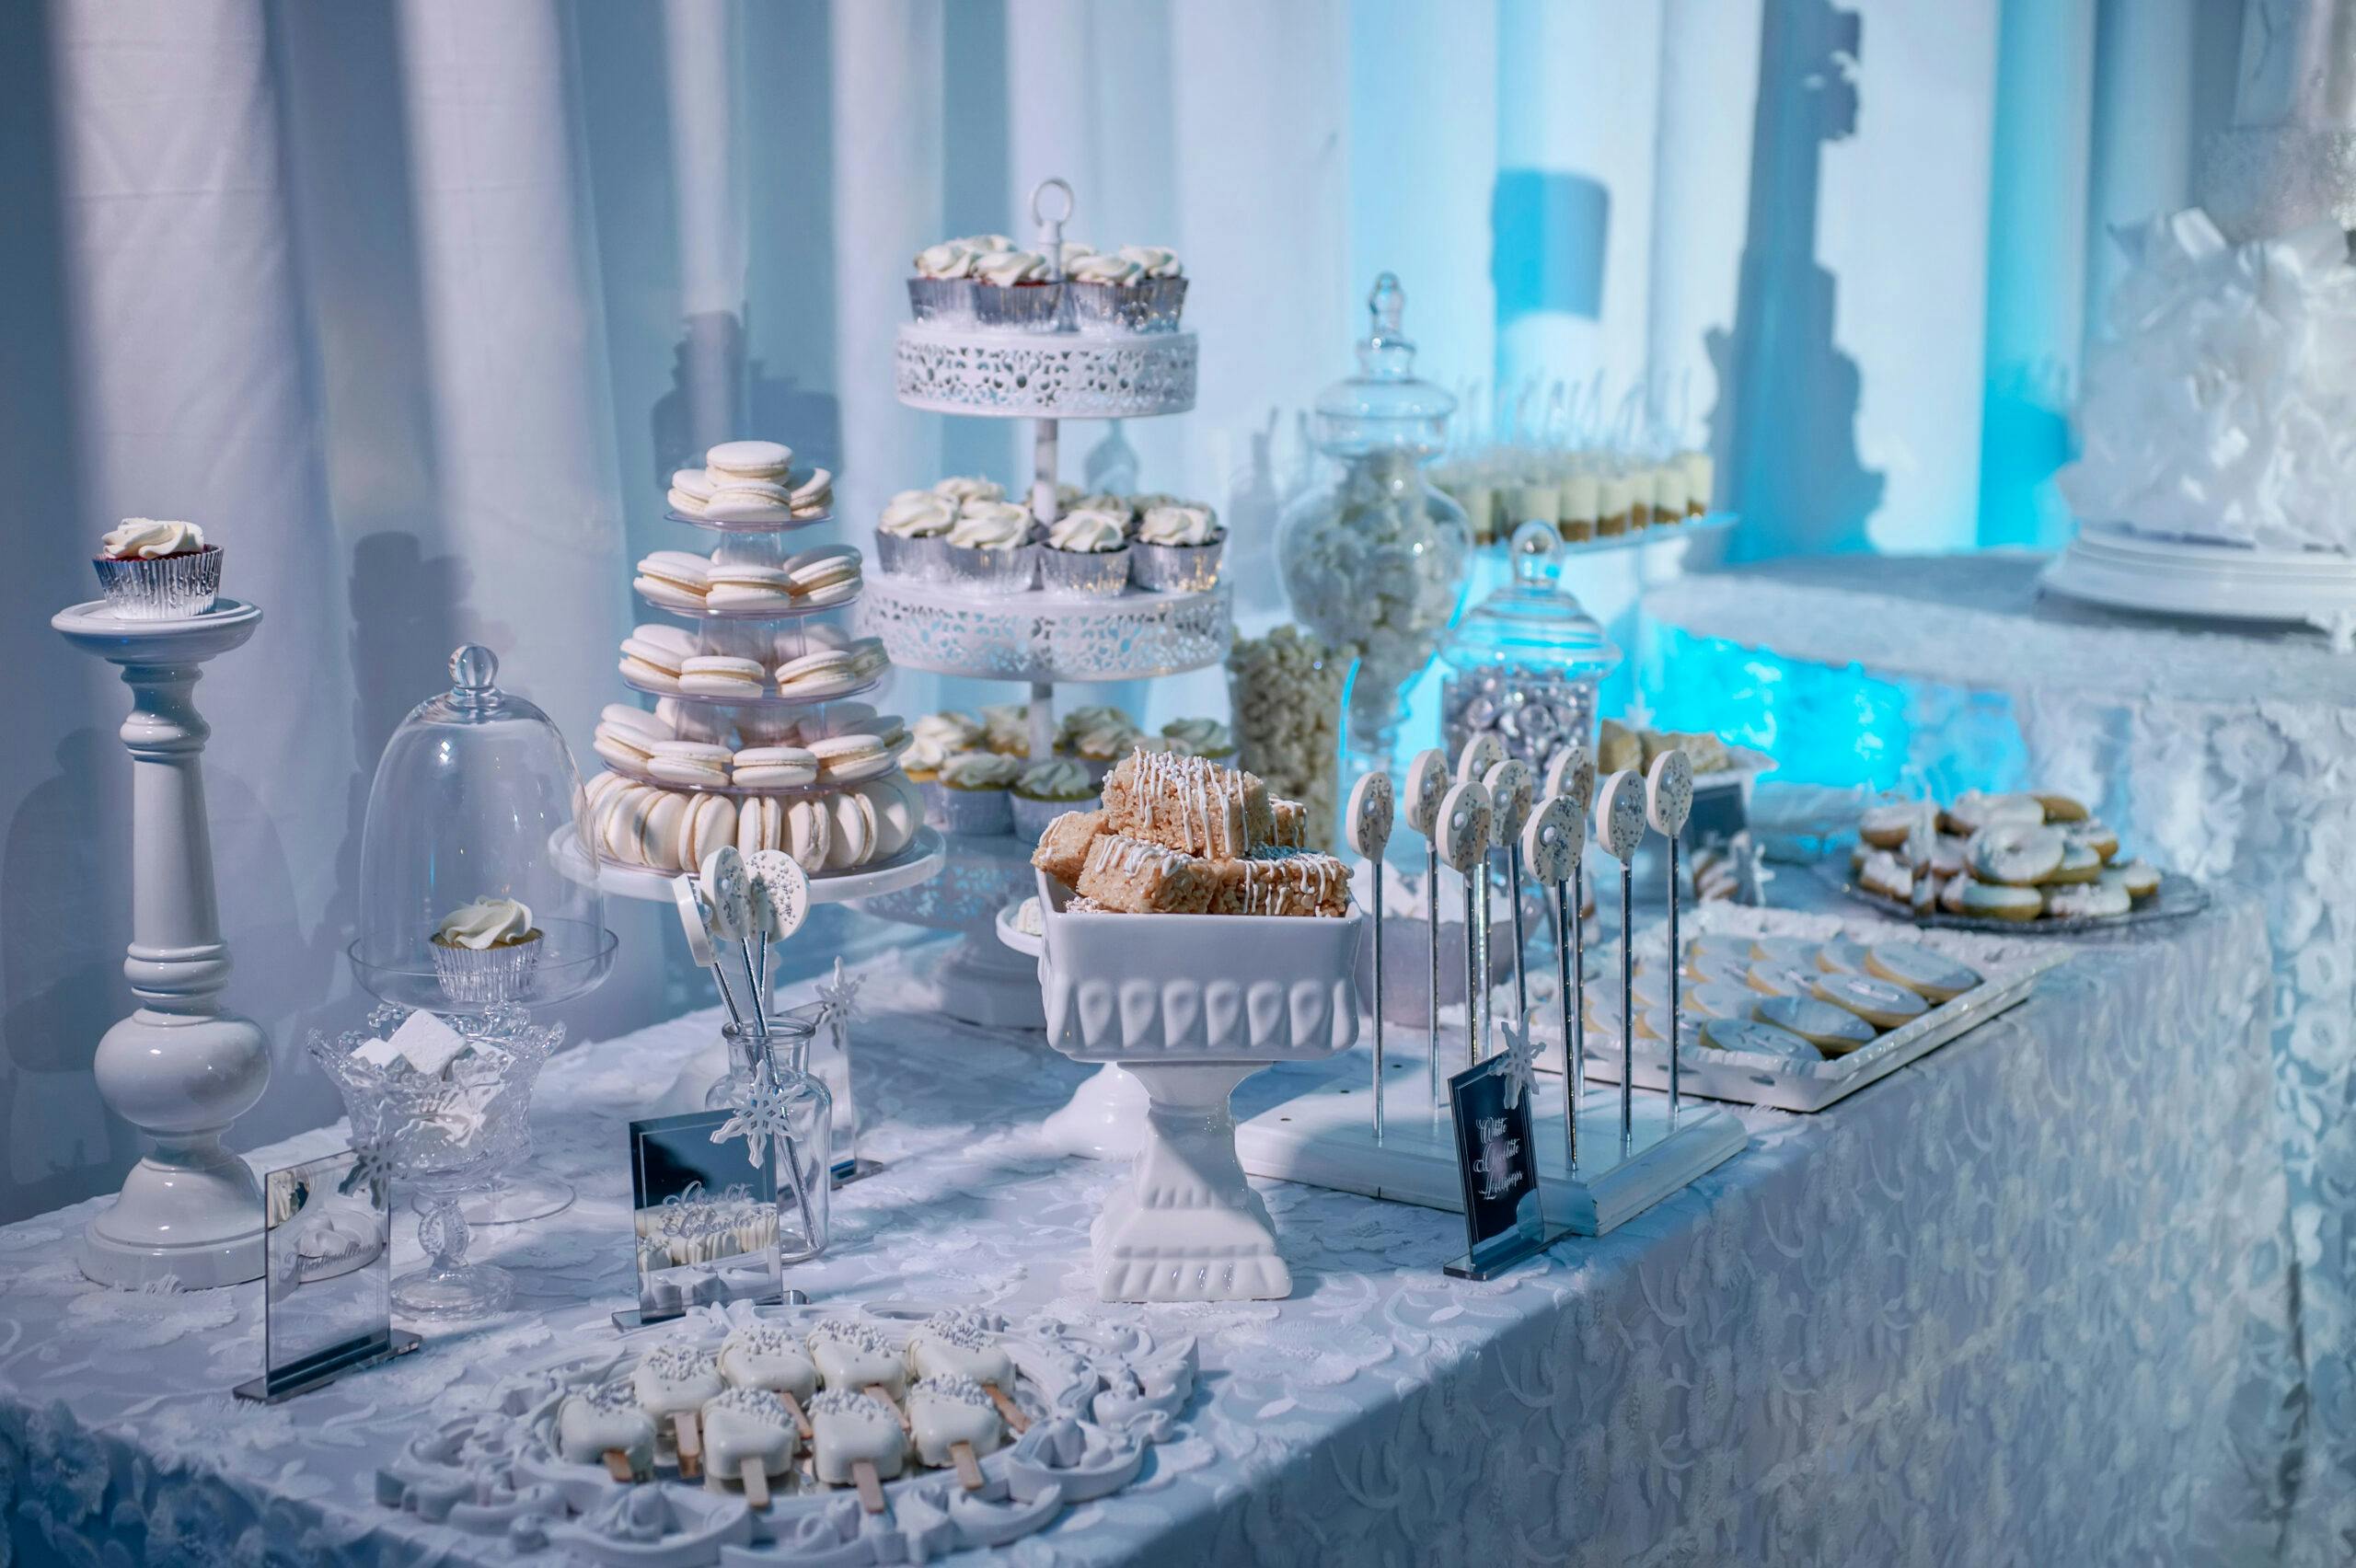 Apres Ski Themed Luxury Birthday Party - Elegante by Michelle J